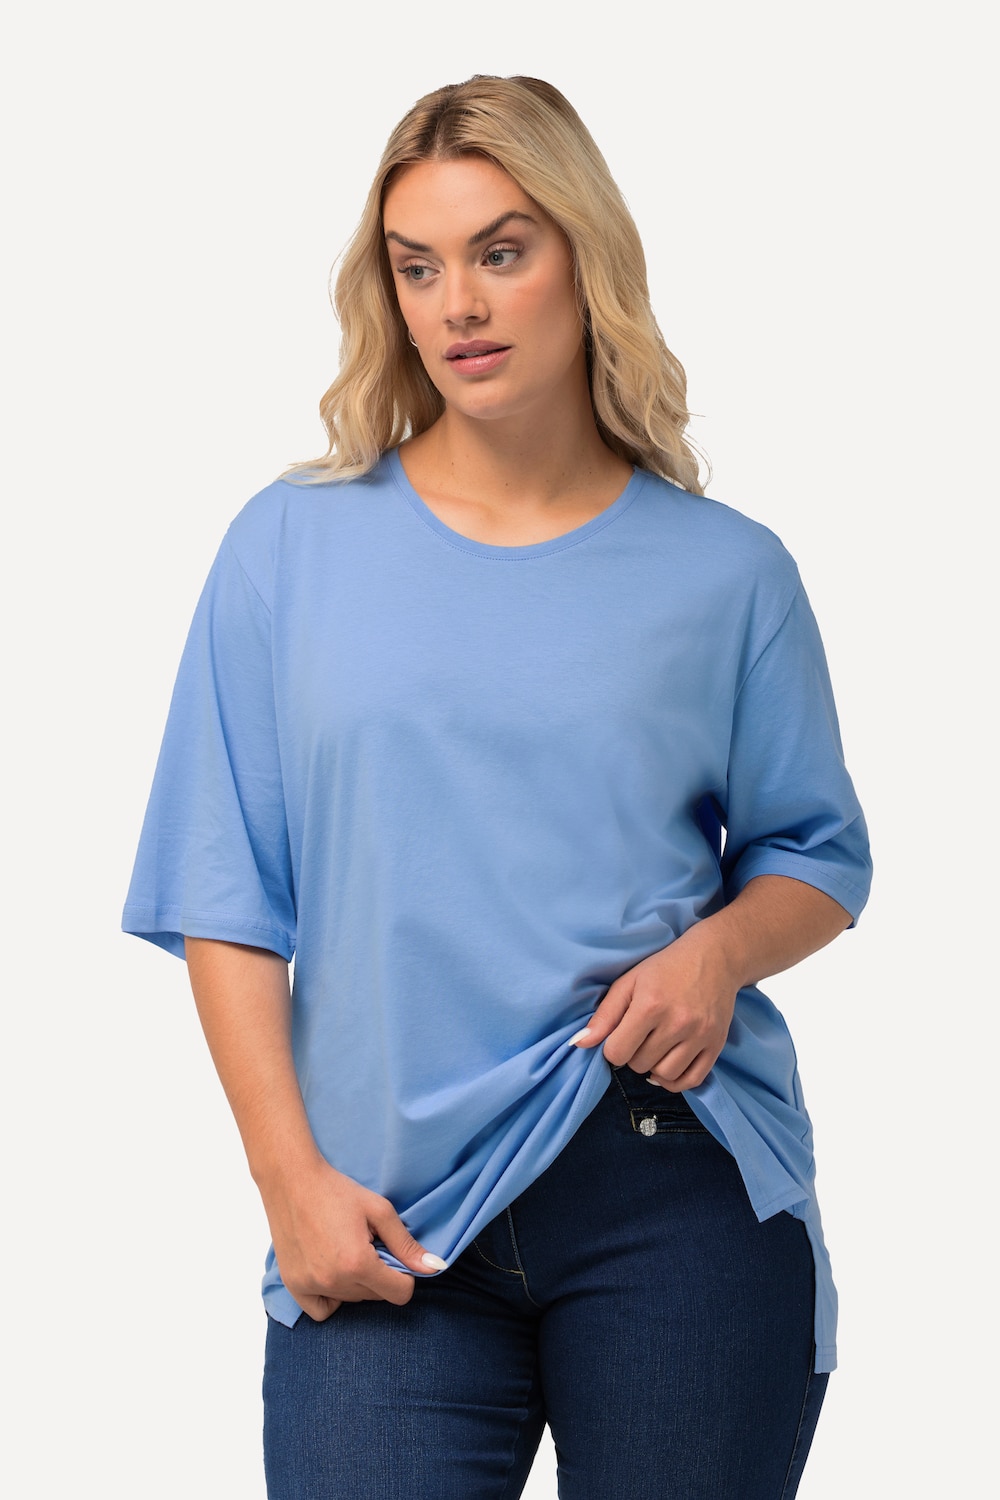 Grote Maten T-Shirt, Dames, blauw, Maat: 42/44, Katoen/Viscose, Ulla Popken